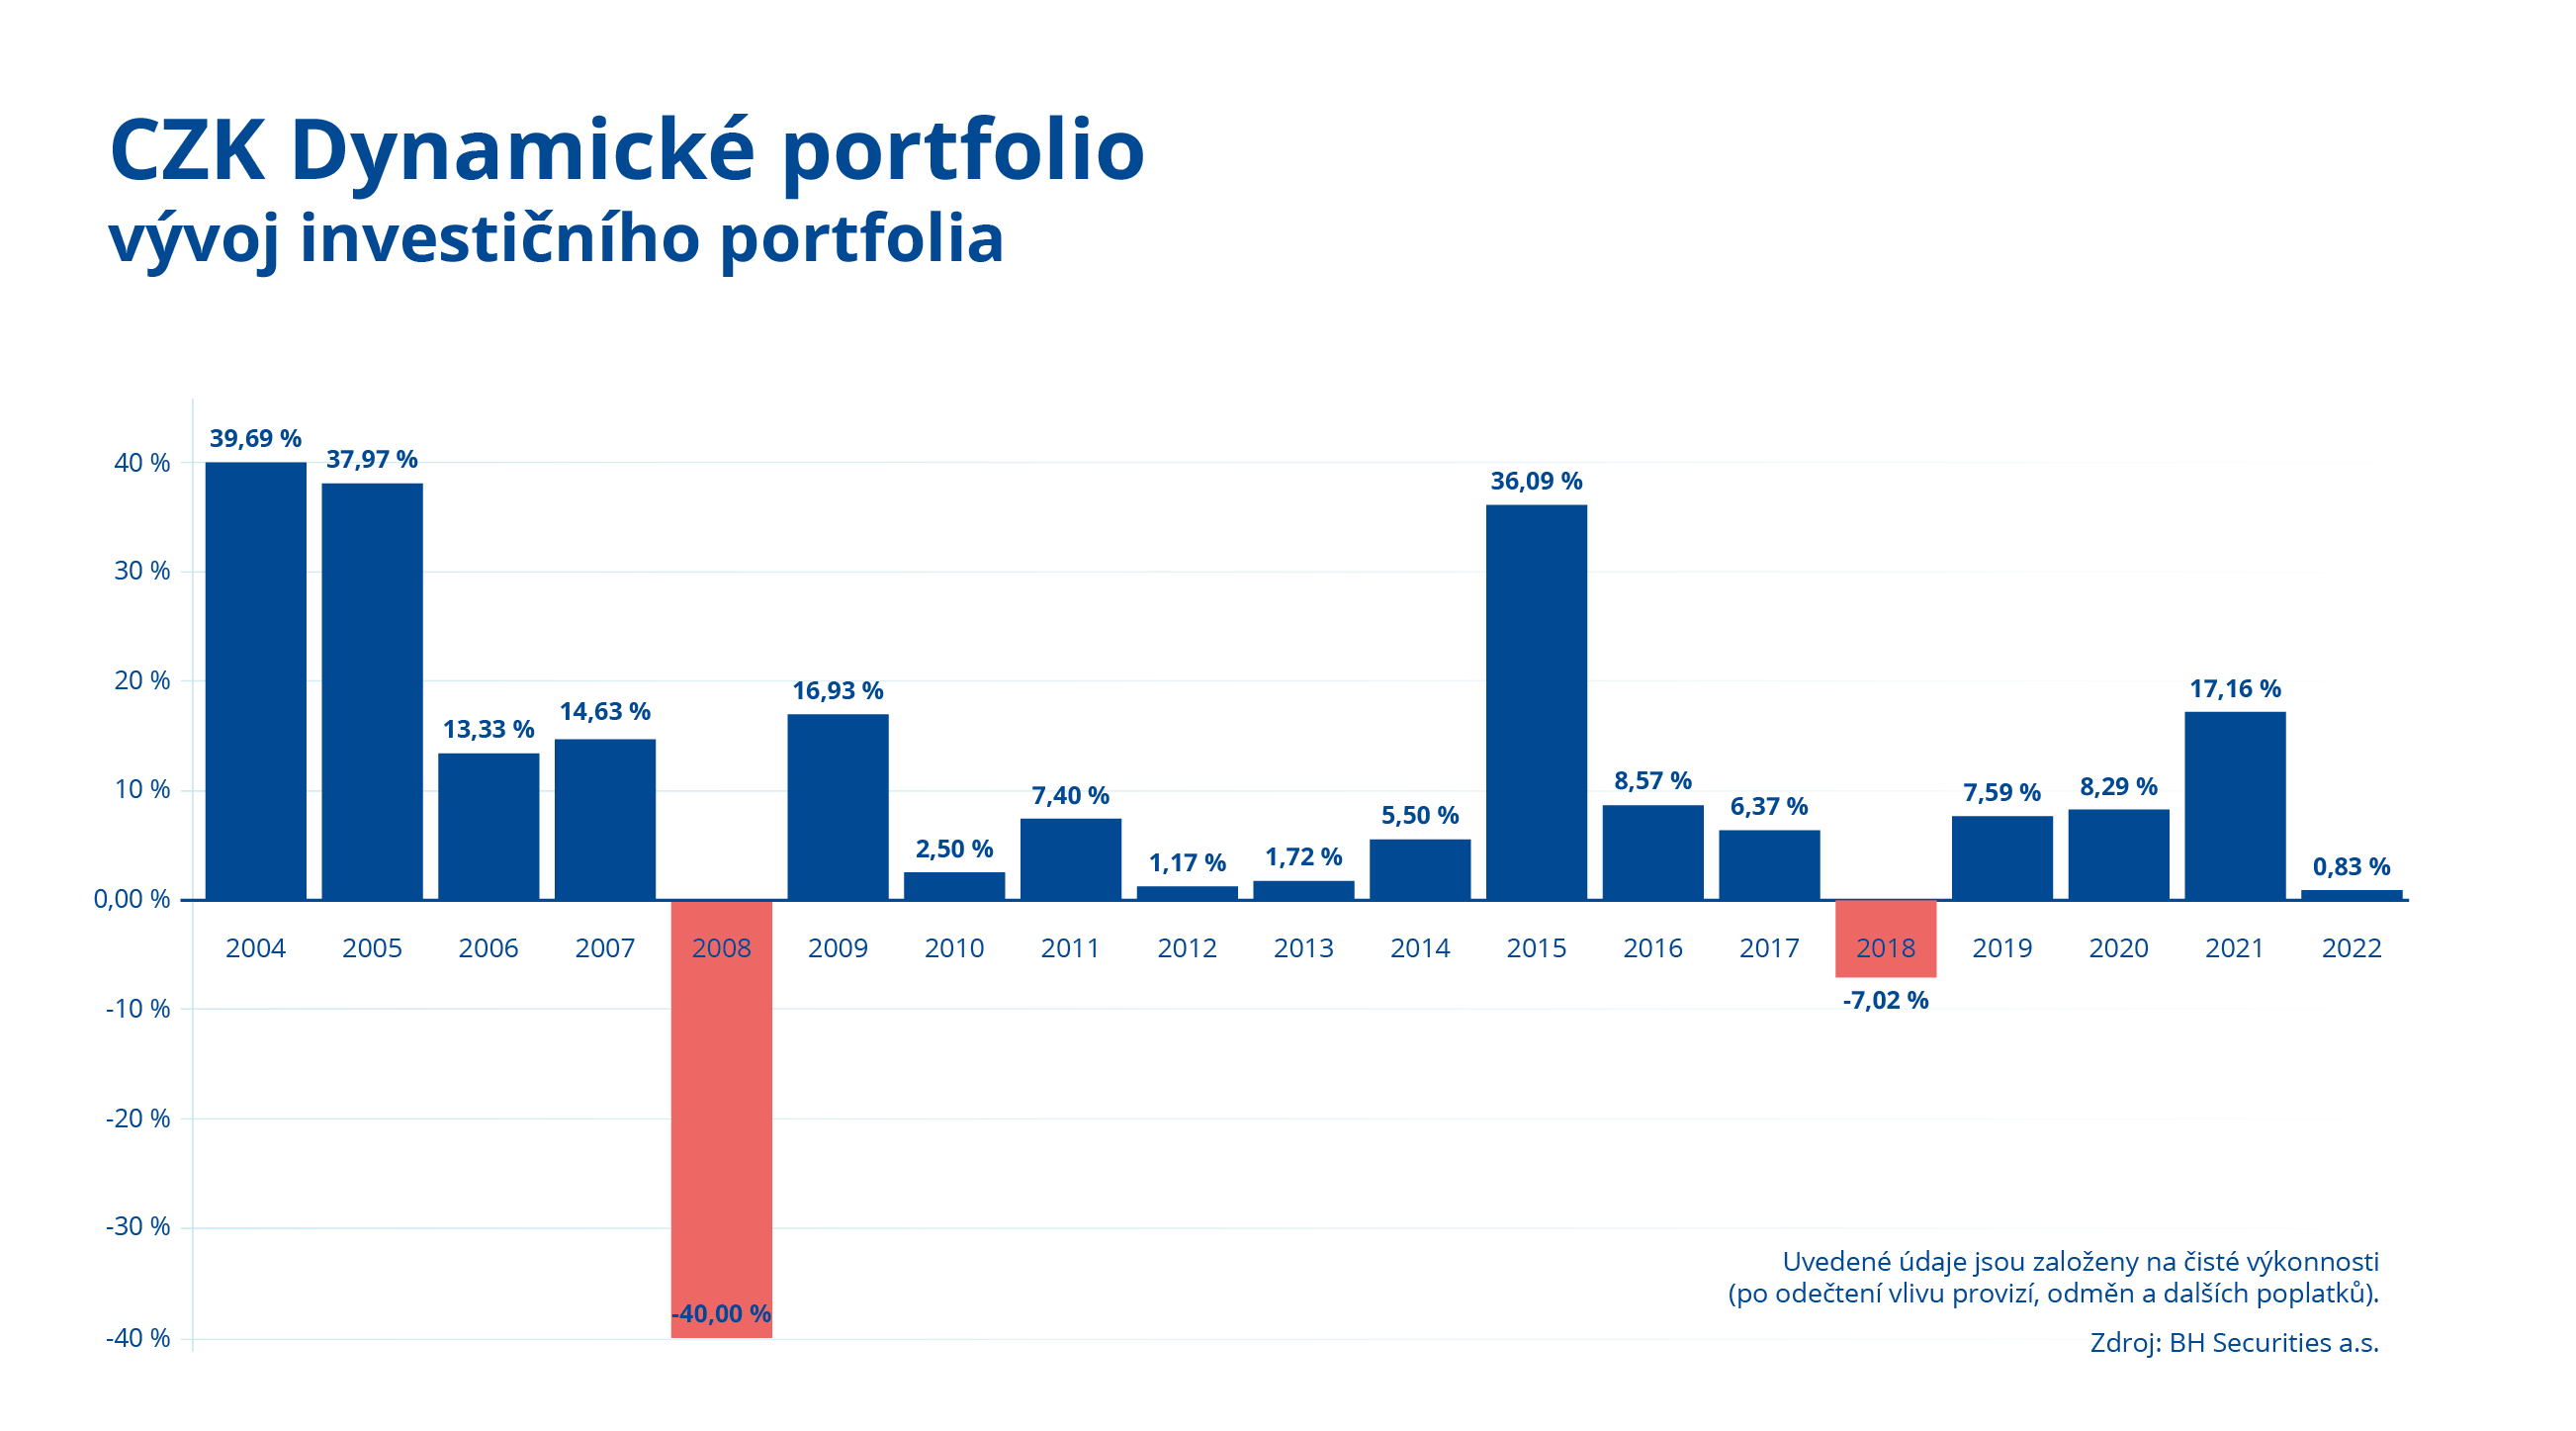 CZK Dynamické investiční portfolio